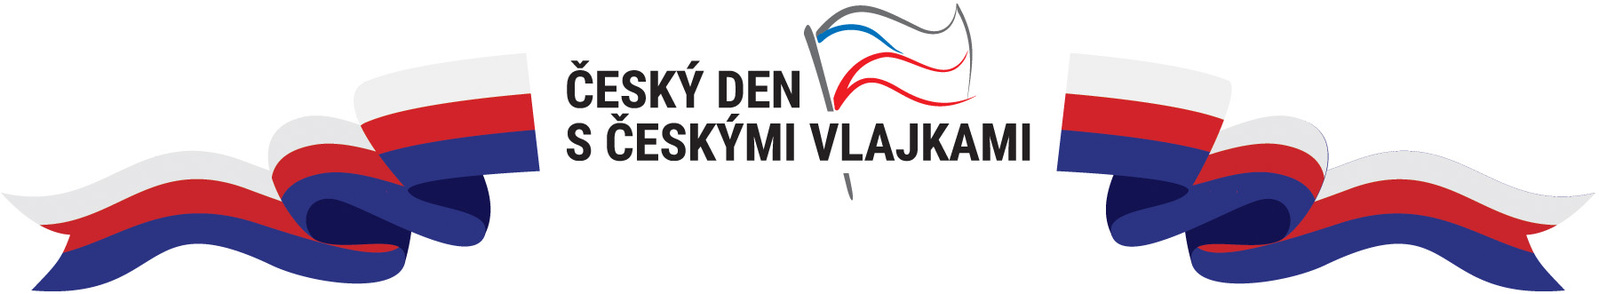 Český den s českými vlajkami - logo.jpg